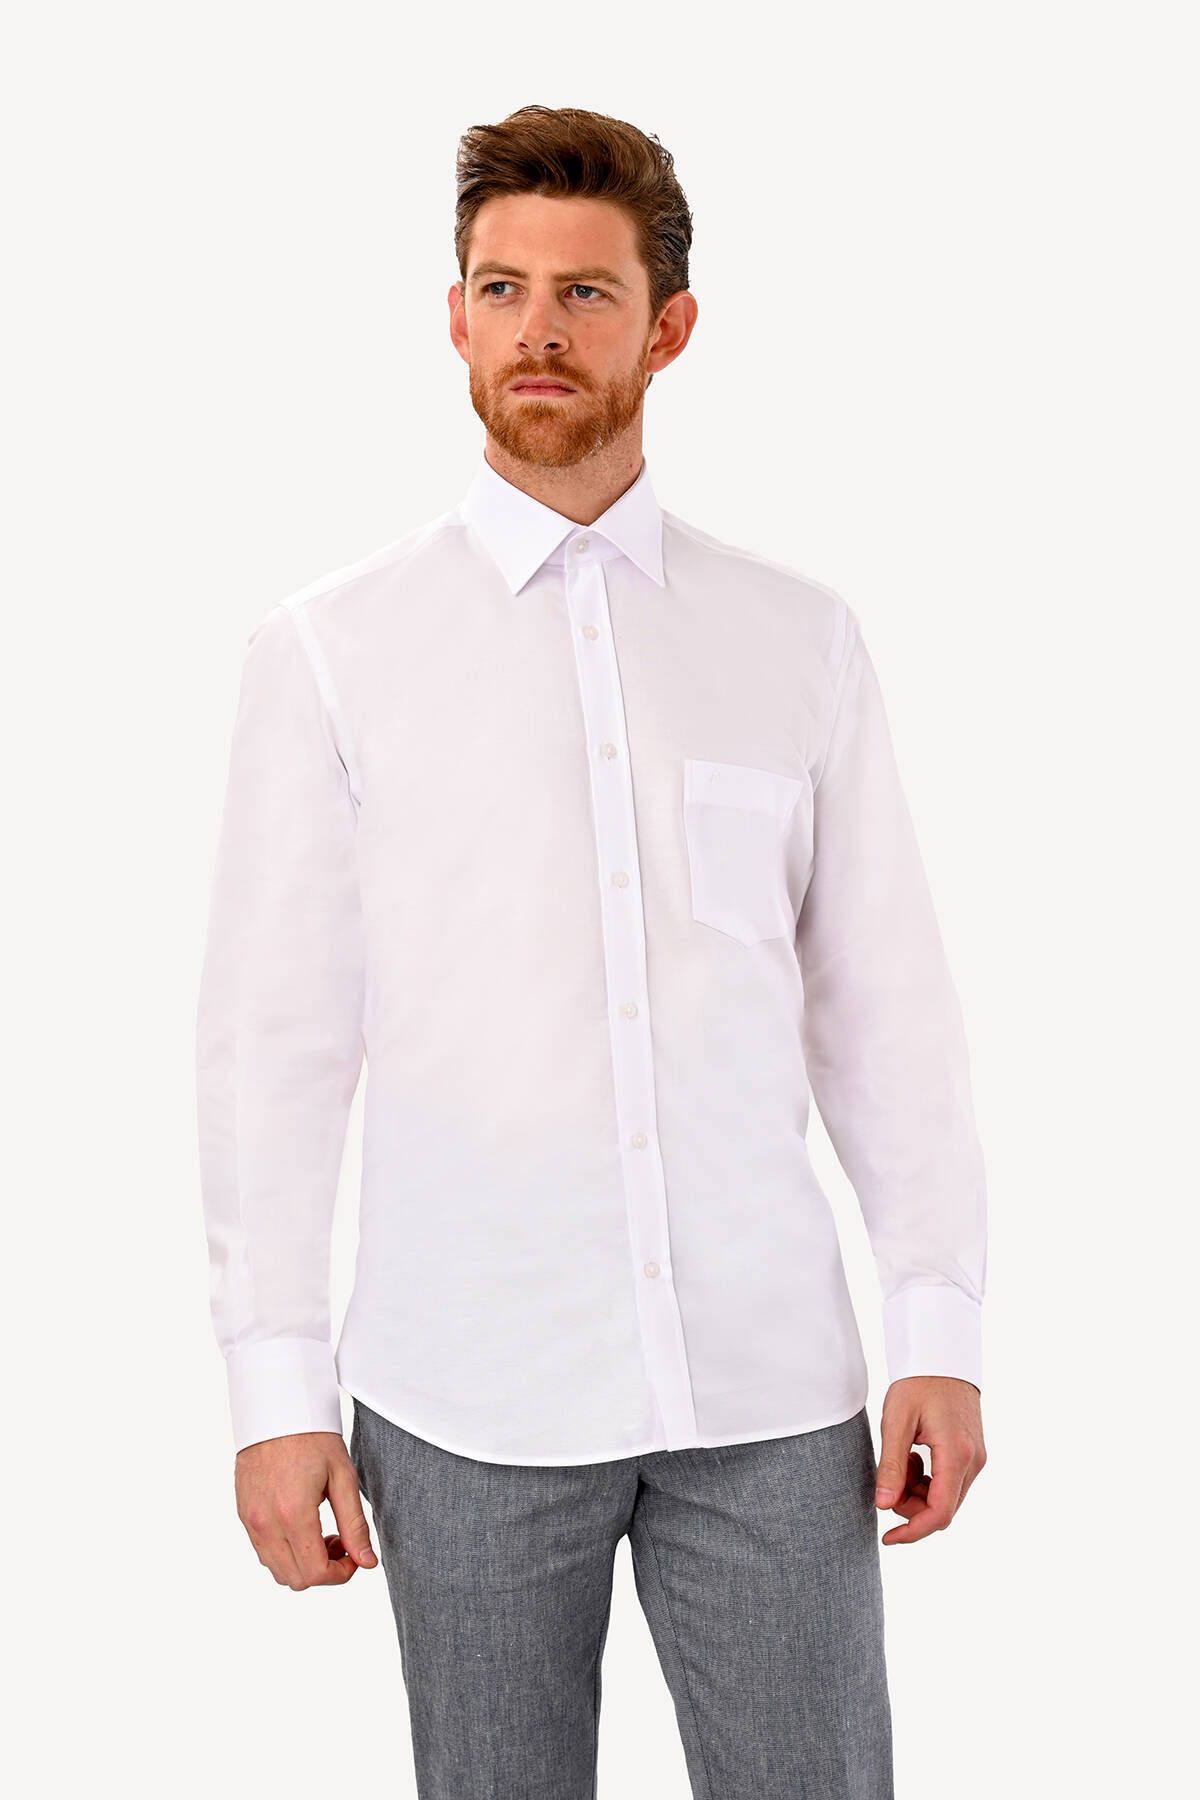 YSF Erkek Beyaz Uzun Kol Klasik Oxfortl Gömlek